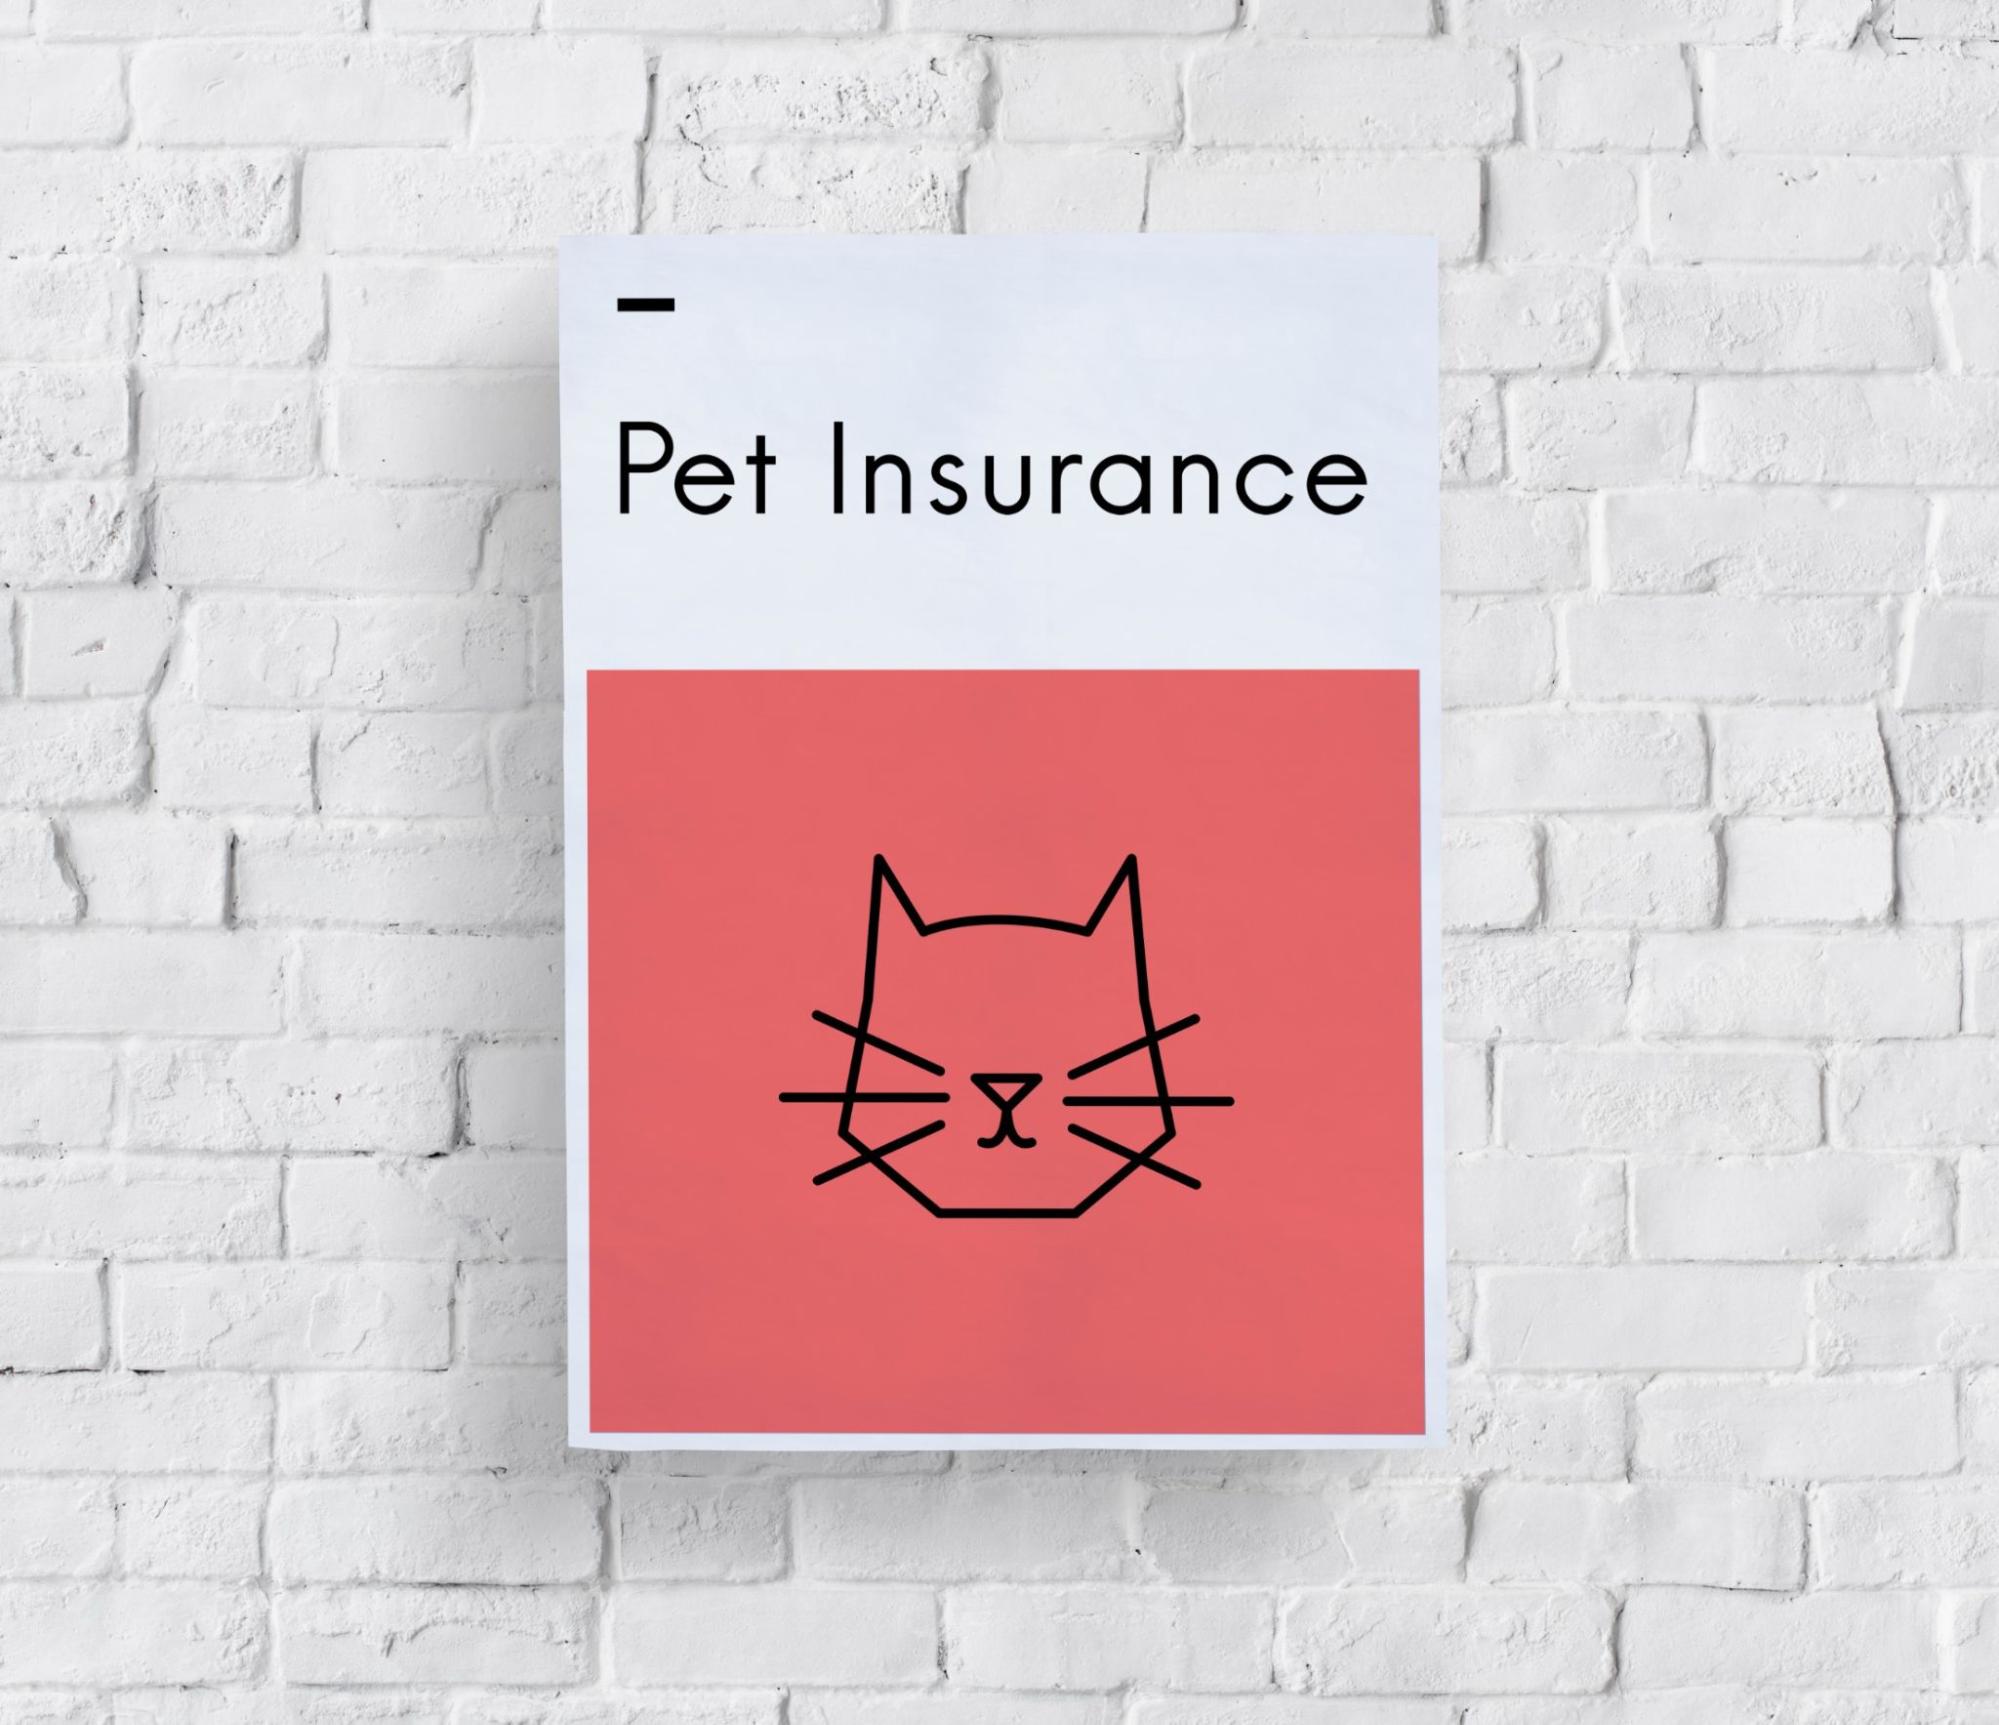 ペット保険